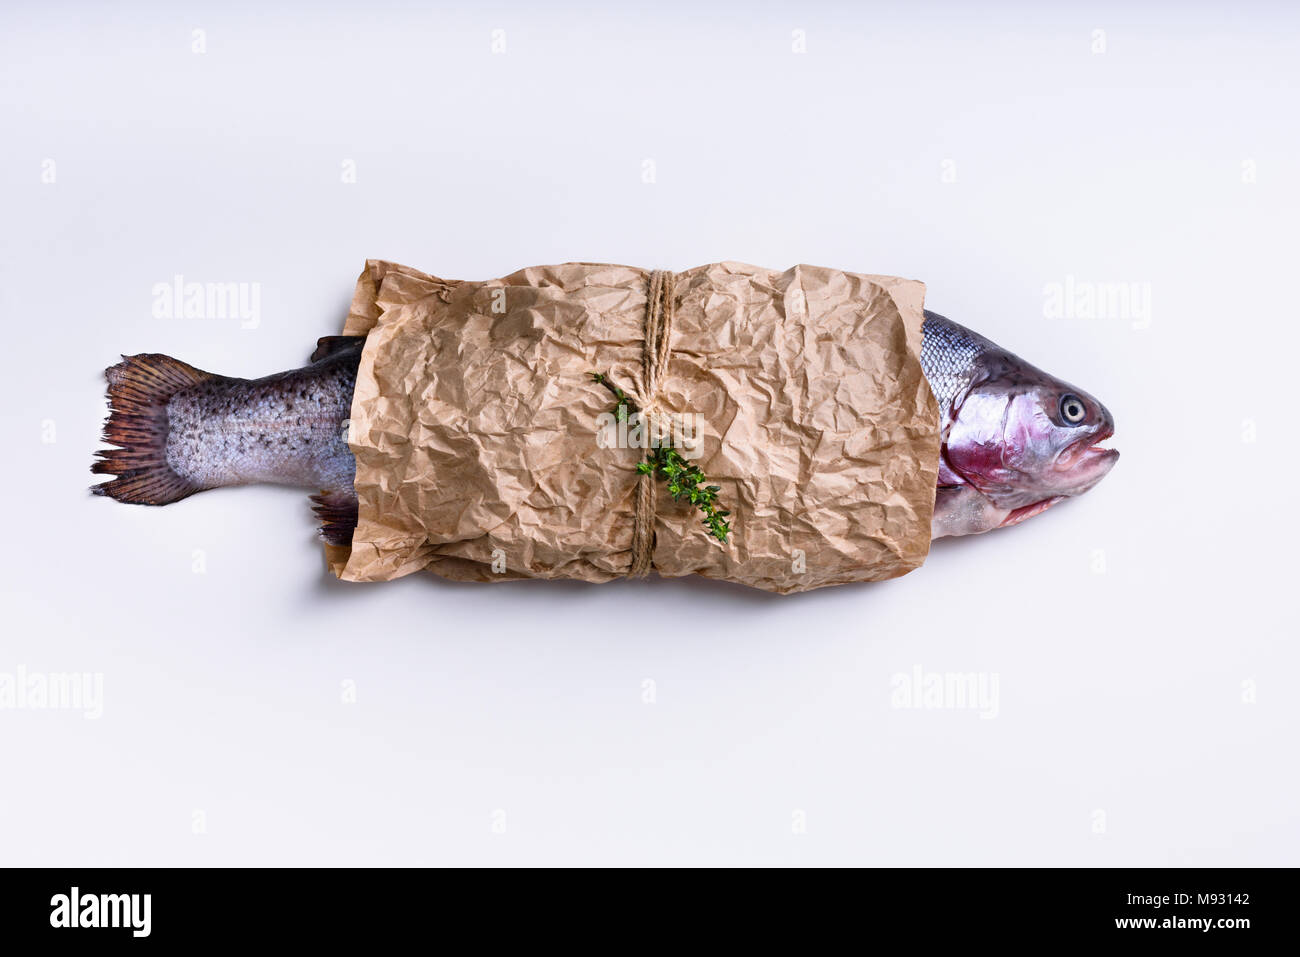 Здесь рыбу заворачивали. Рыба в бумаге. Упакованная рыба в бумаге. Во что заворачивают рыбу. Рыба на листе бумаги.